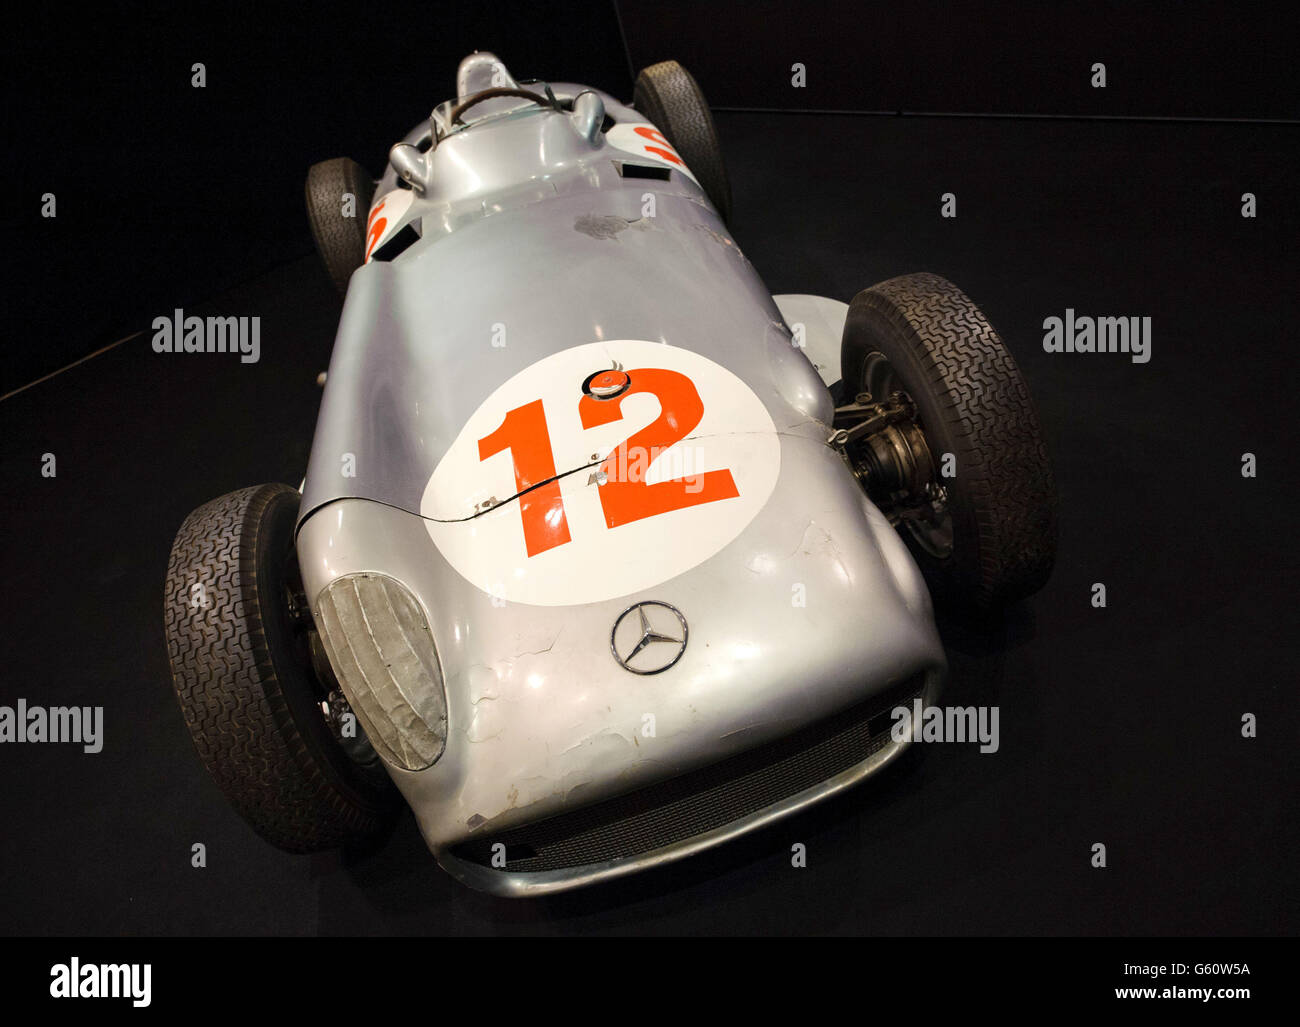 Mercedes-Benz W196 Formula 1 Grand Prix per la vendita Foto Stock